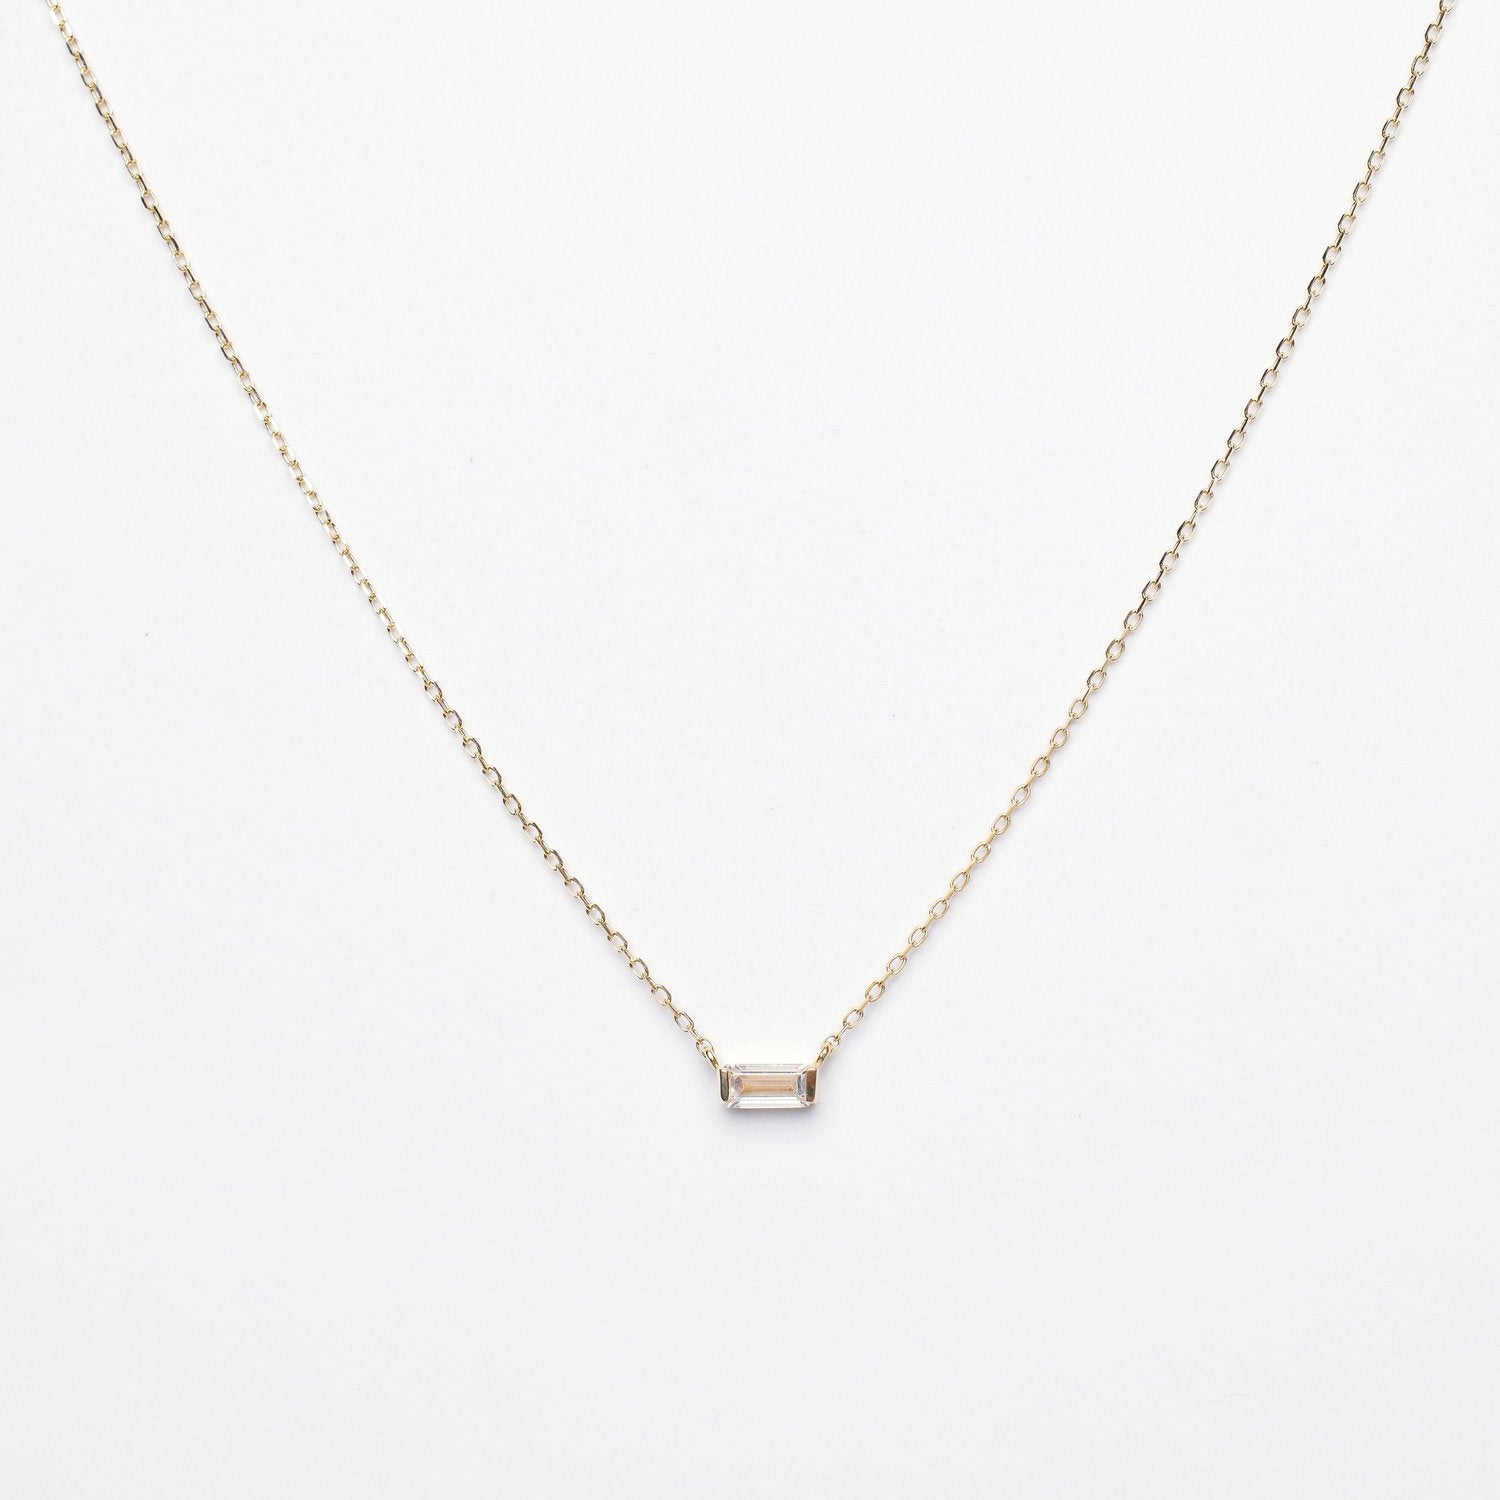 Elsa CZ Baguette Pendant 14k Solid Gold Necklace - P I C N I C 